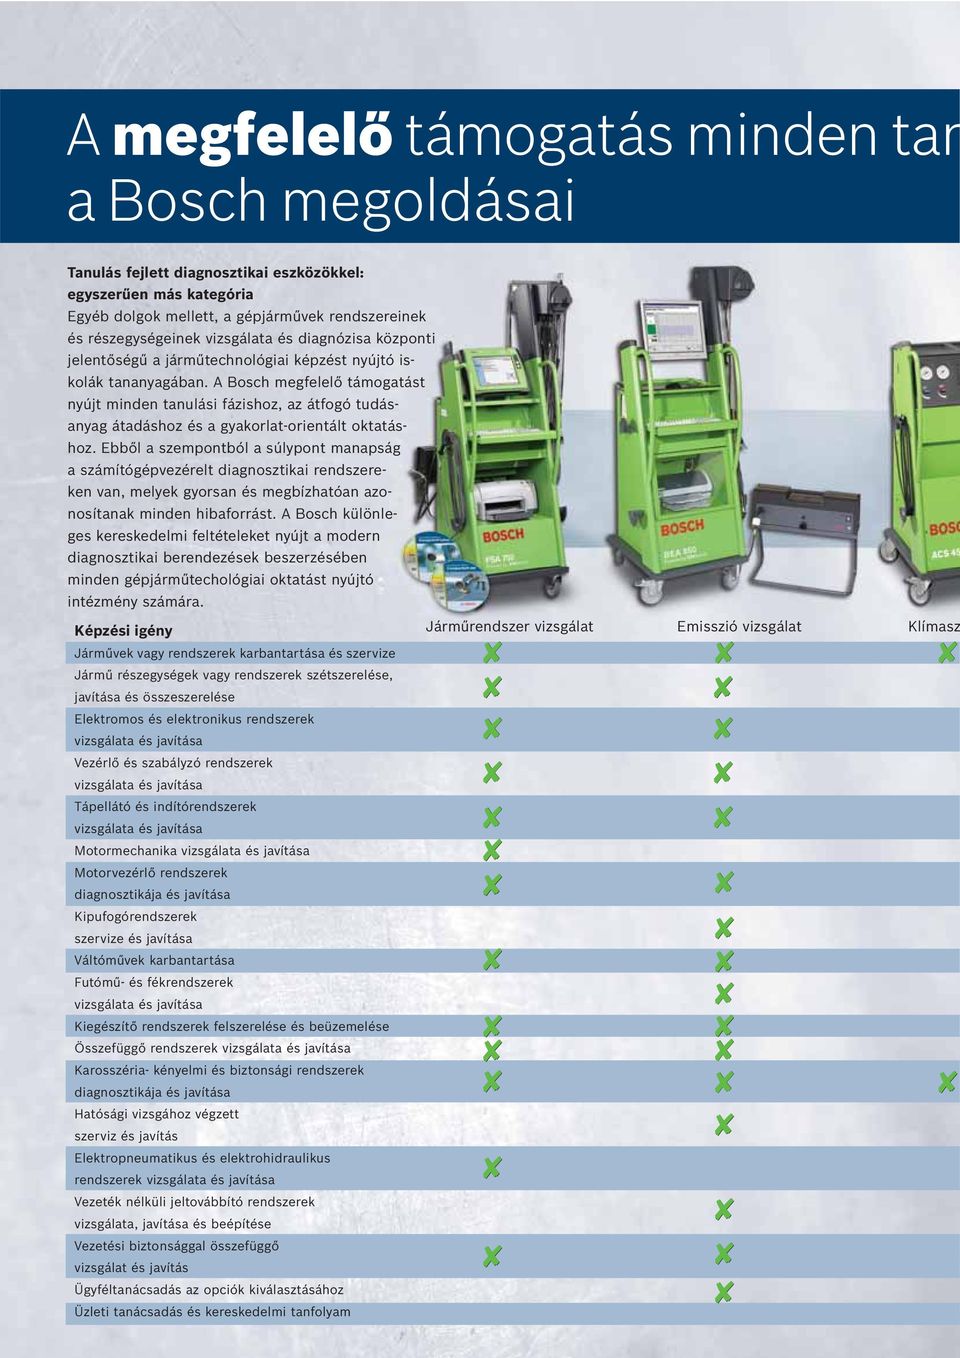 A Bosch megfelelő támogatást nyújt minden tanulási fázishoz, az átfogó tudásanyag átadáshoz és a gyakorlat-orientált oktatáshoz.